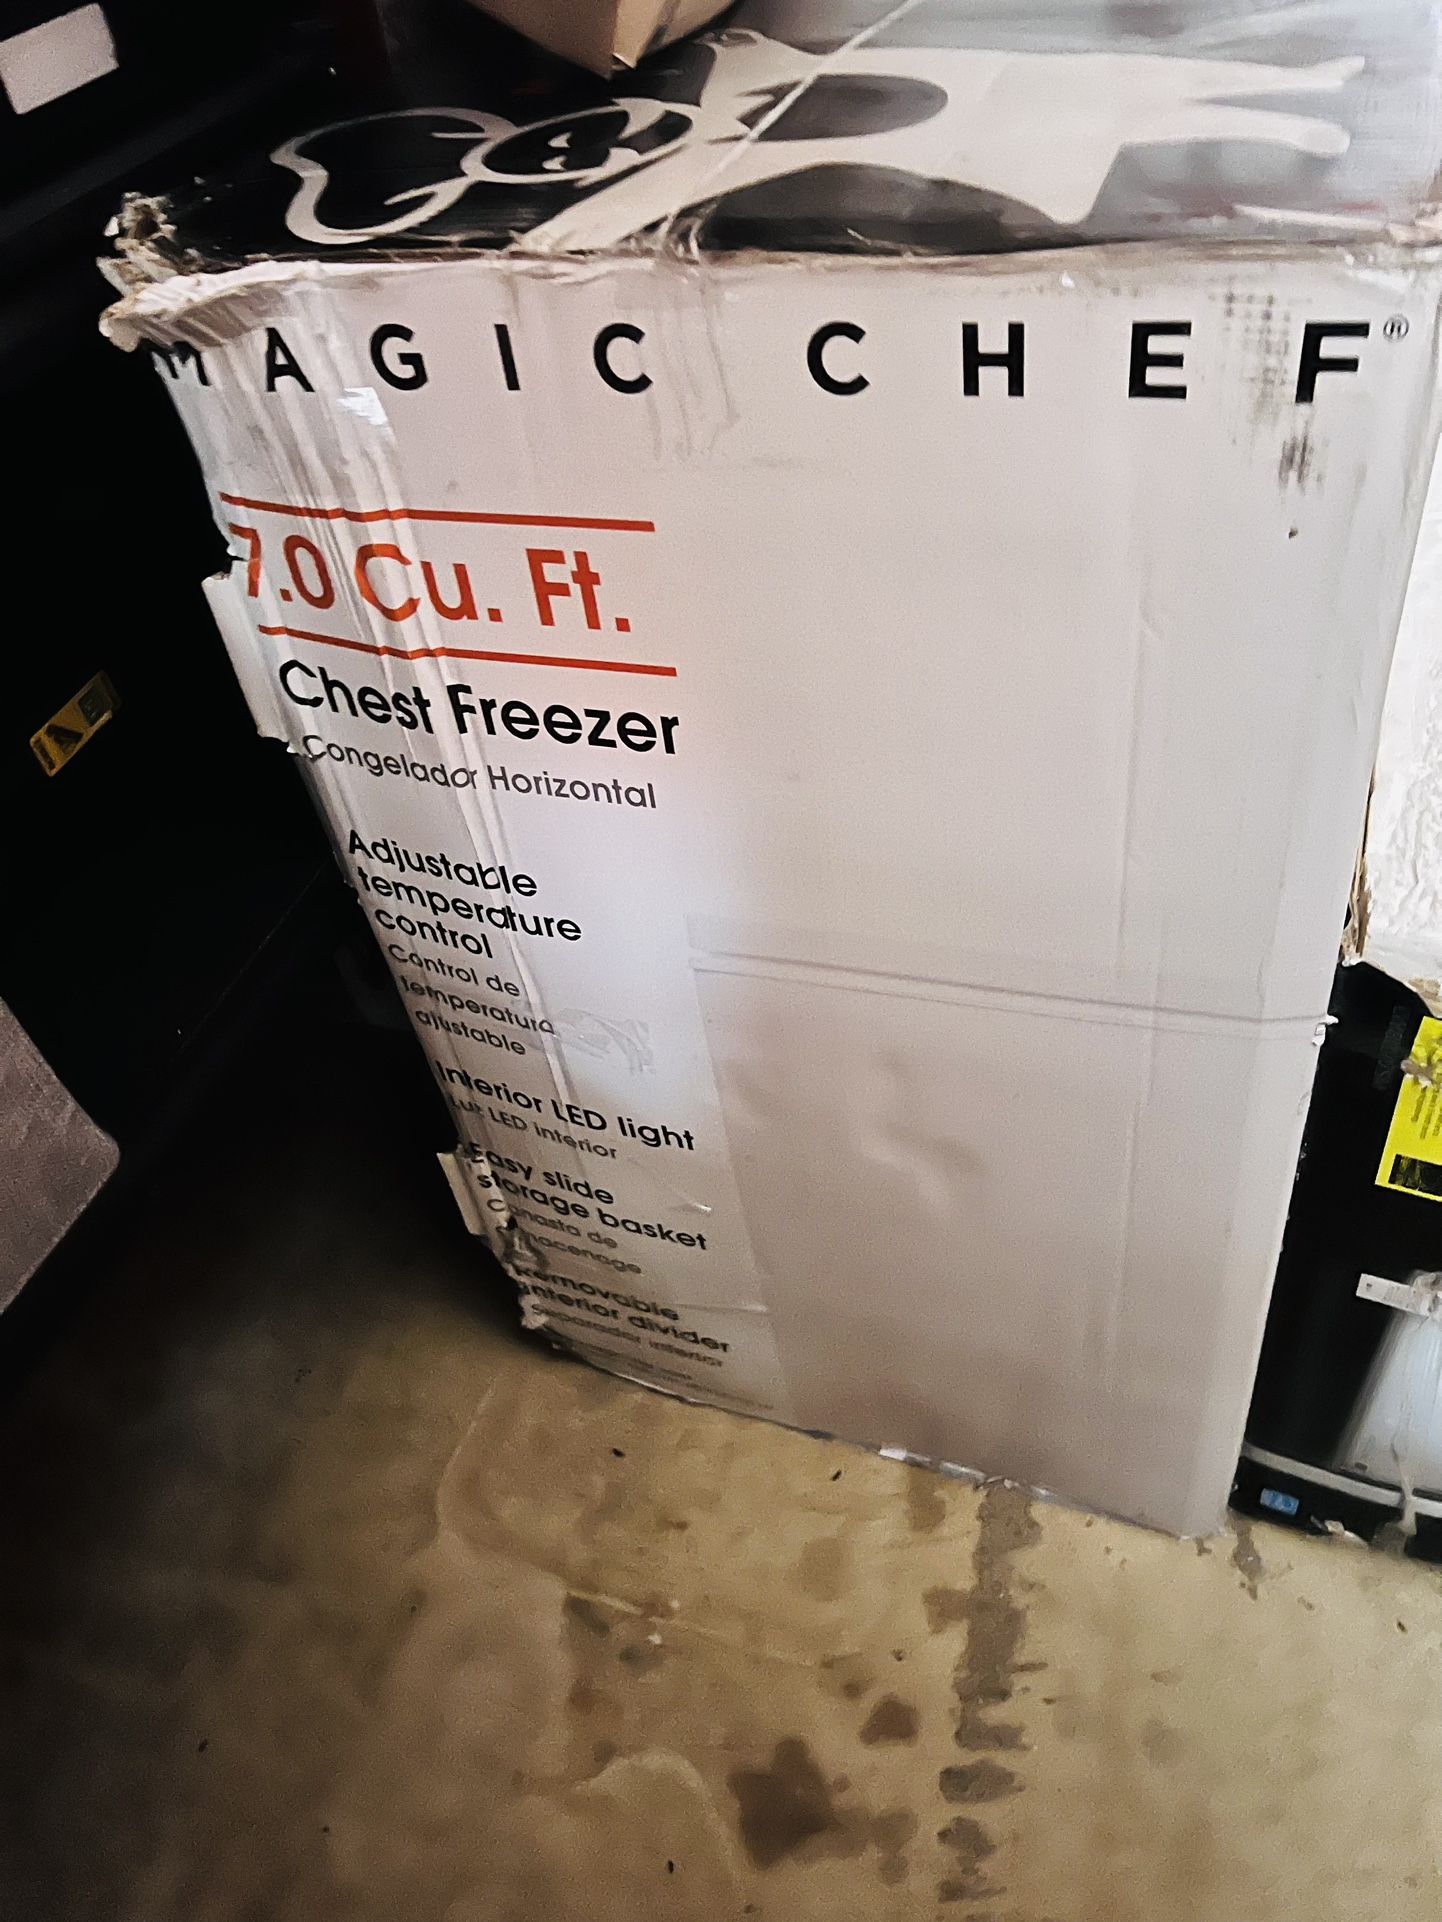 Magic Chef 7.0 Cu. Ft. Chest Freezer